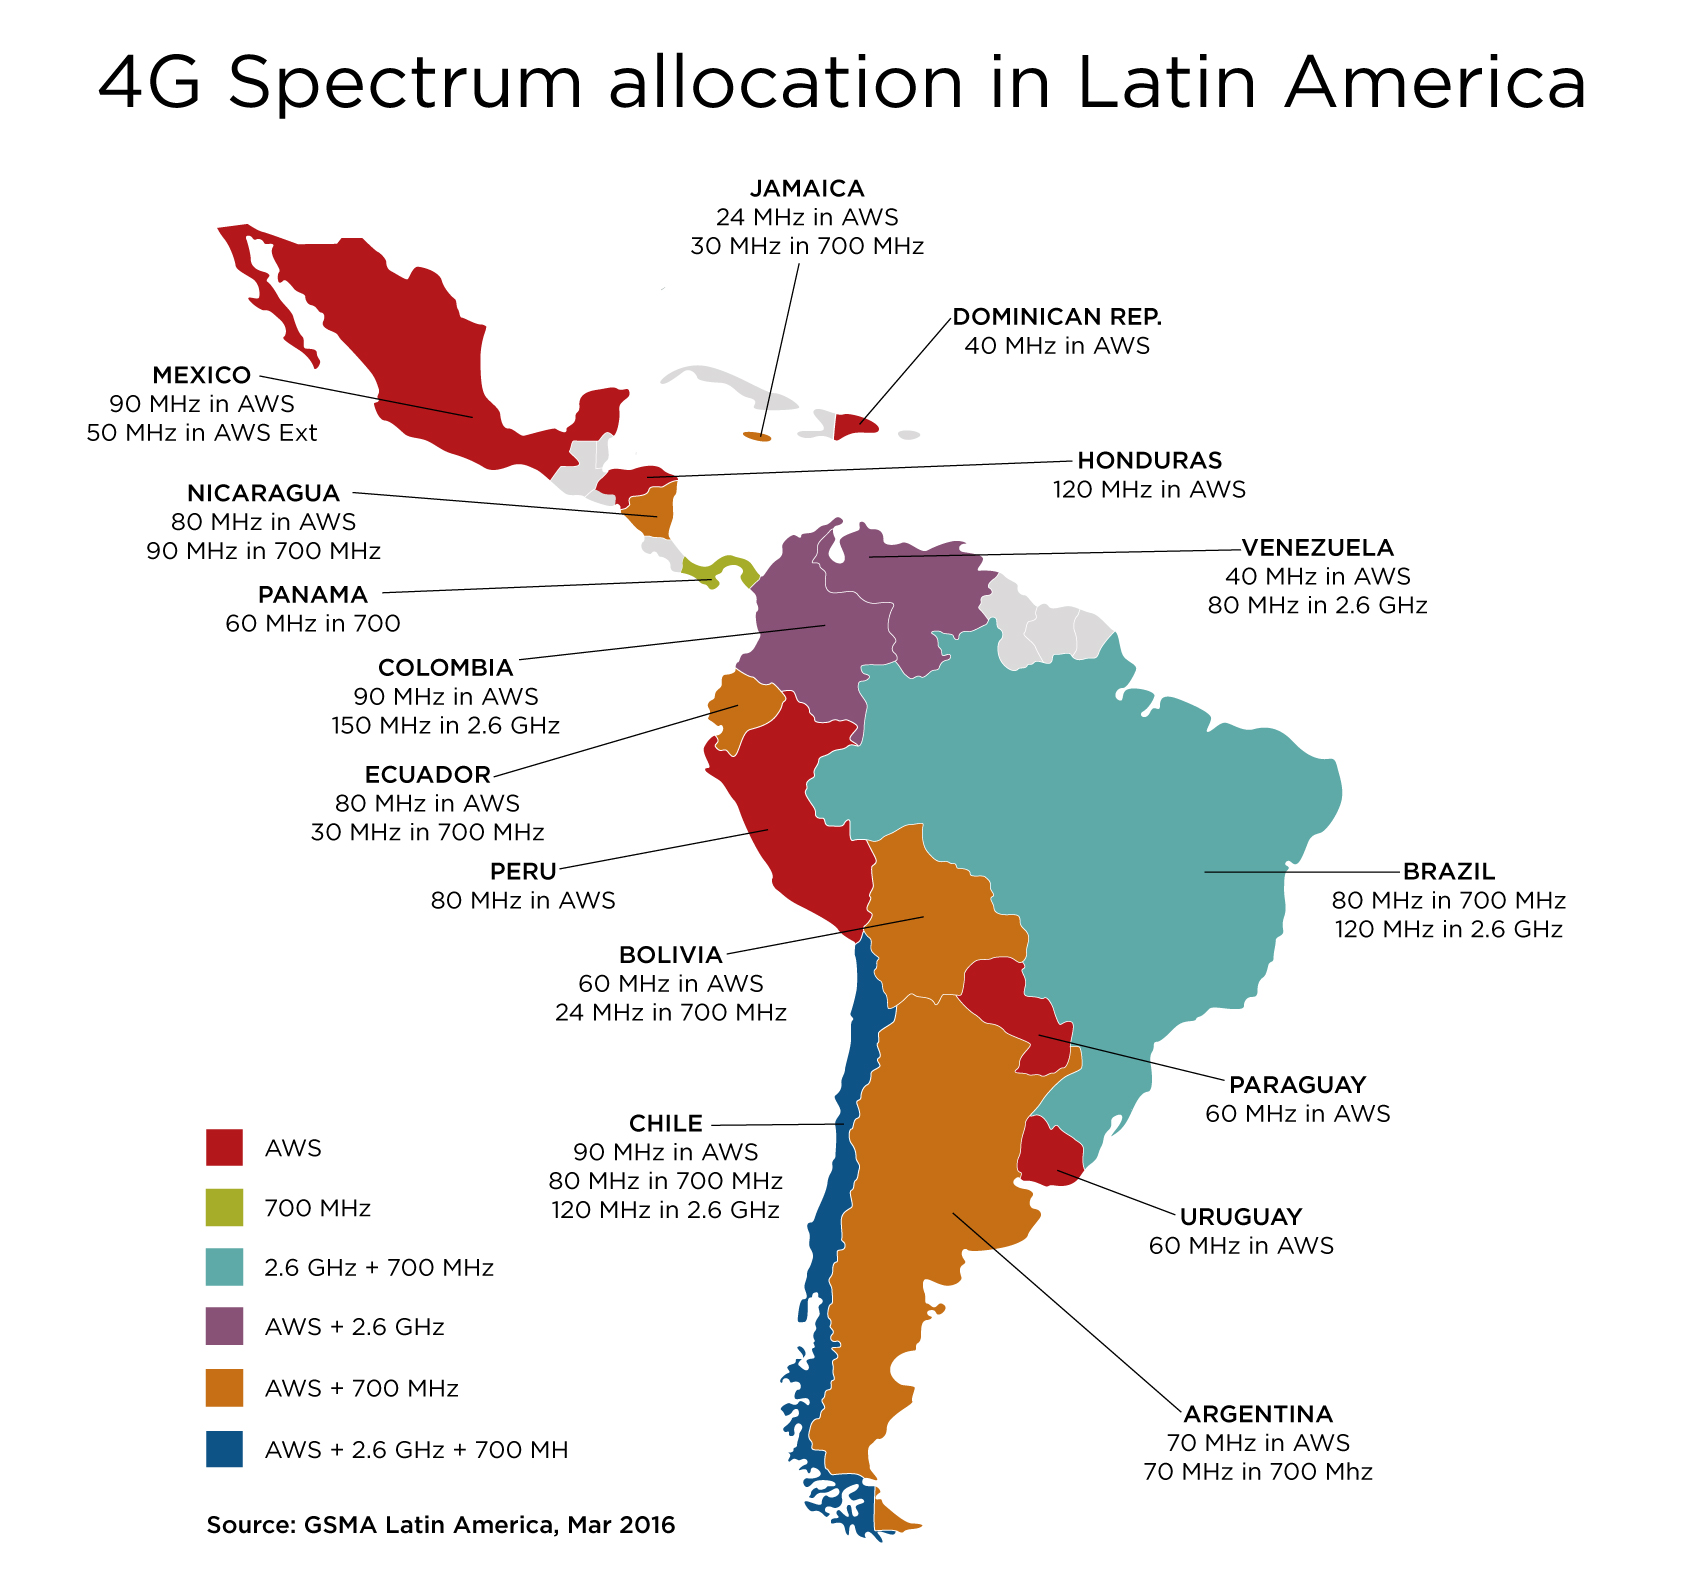 Инцест Латинская Америка